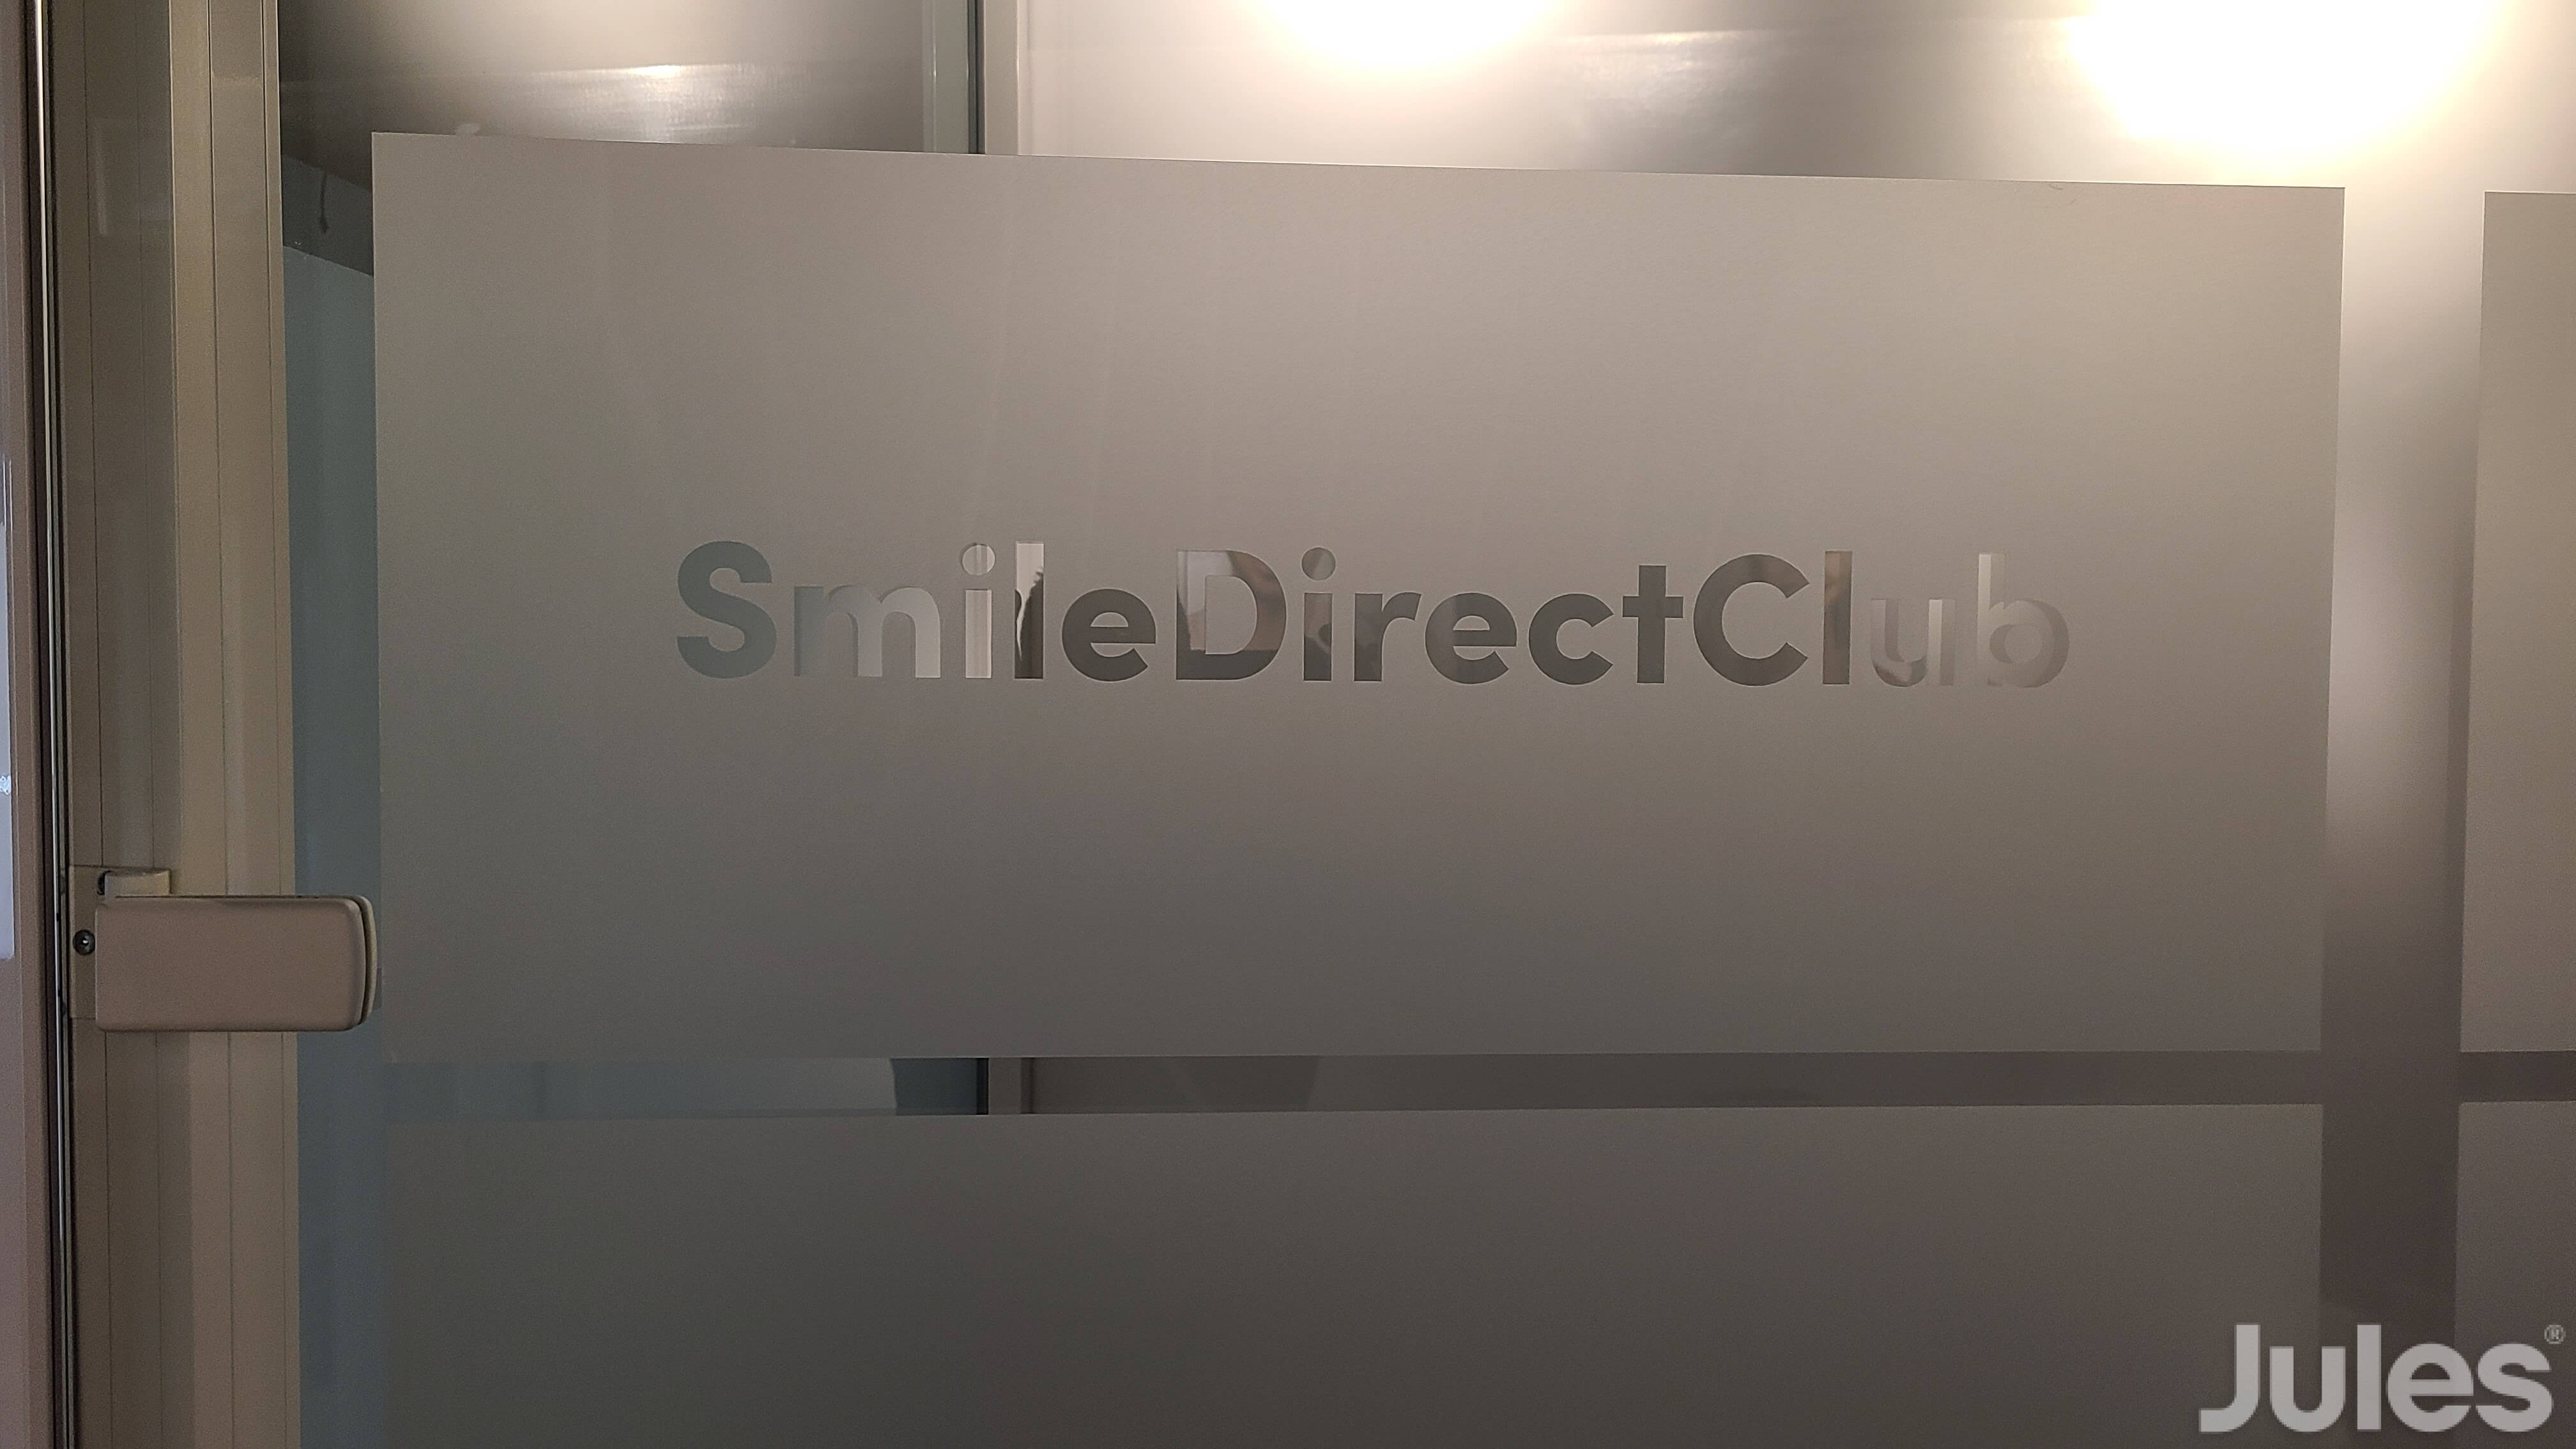 Vinyle givré logo smile direct club